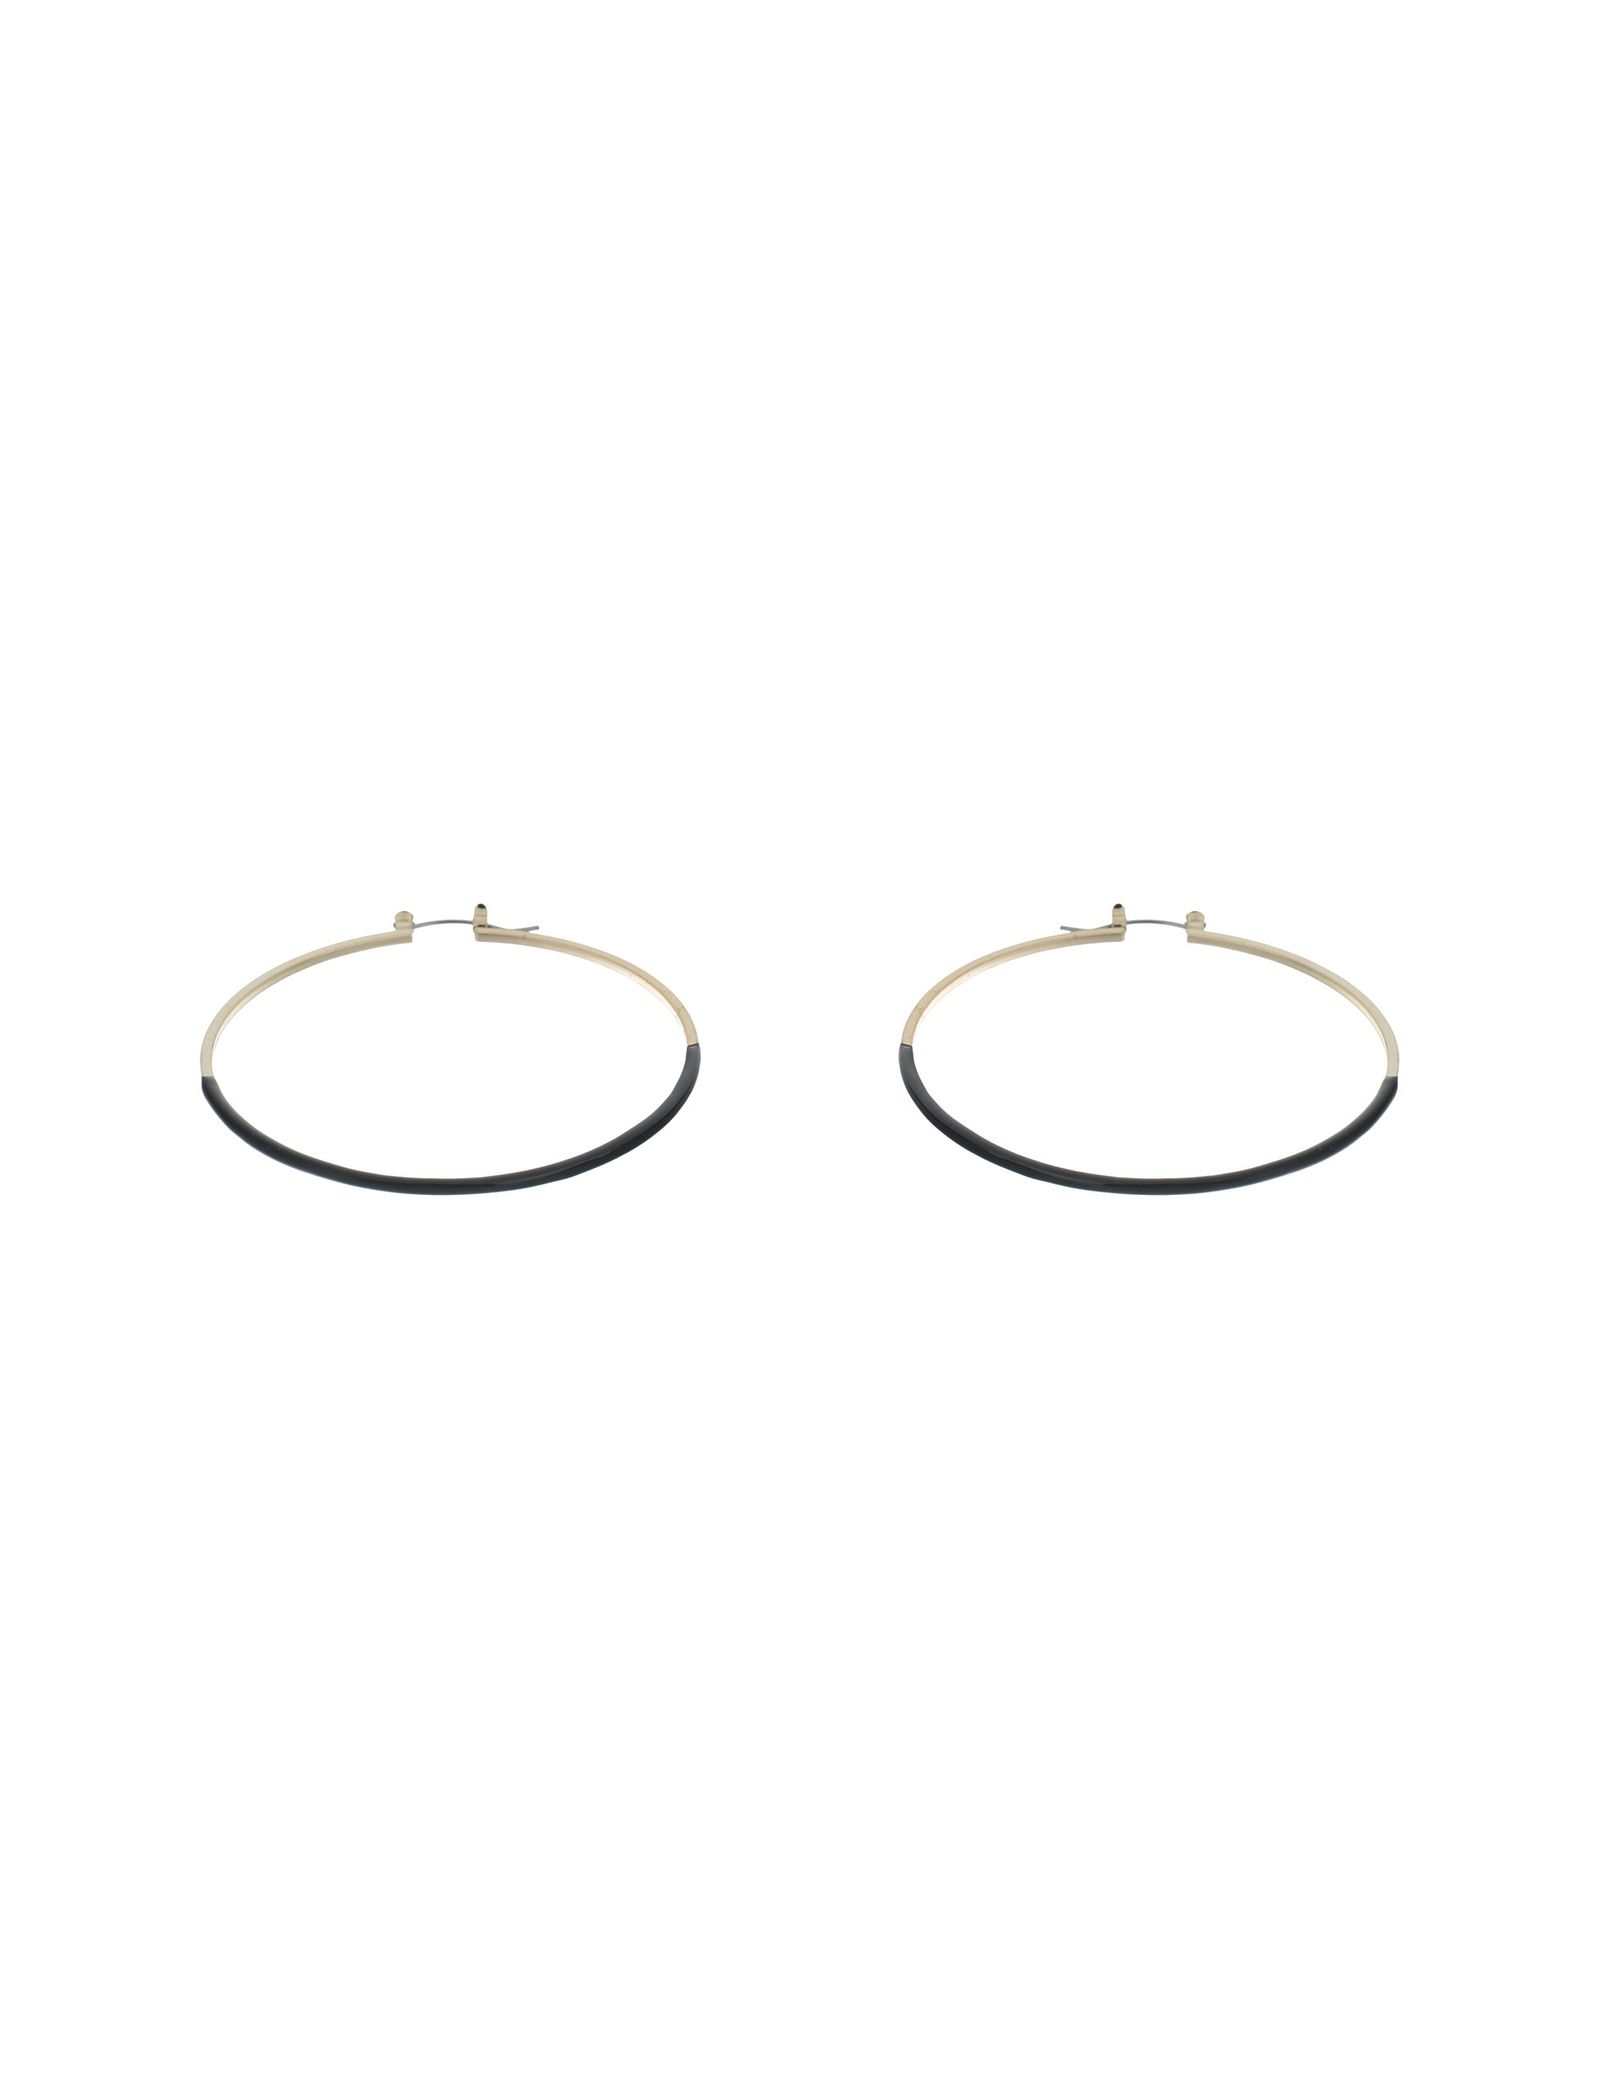 گوشواره استیل حلقه ای زنانه - اکسسورایز تک سایز - طلايي مشکي - 4